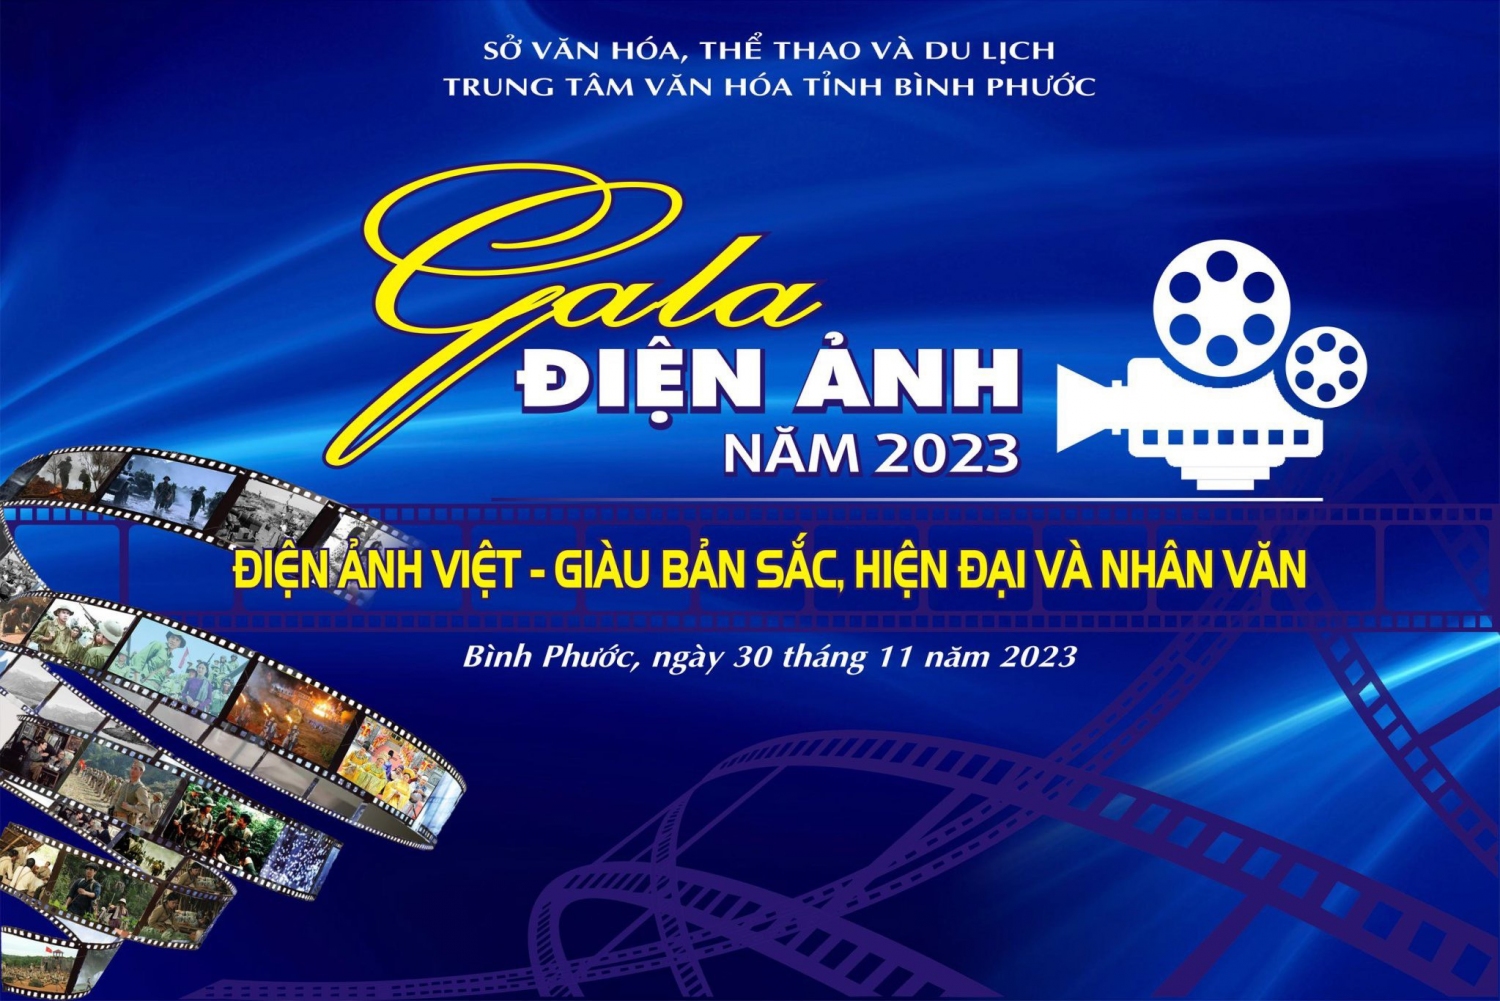 Gala Điện ảnh tỉnh Bình Phước năm 2023